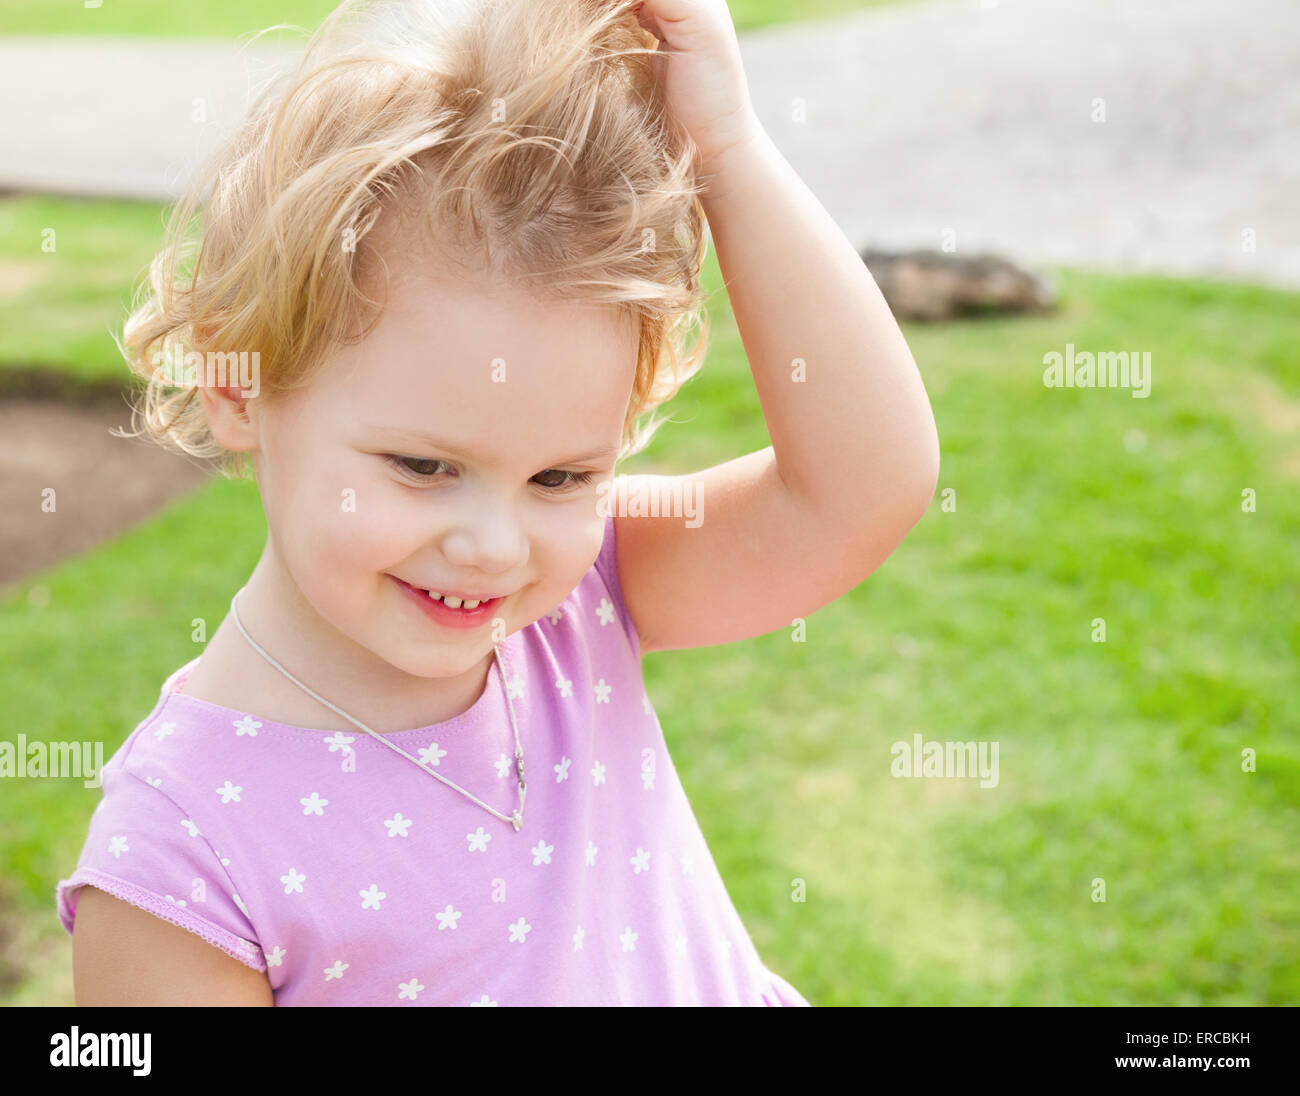 L'été en plein air ludique portrait of cute smiling Caucasian baby girl blonde dans un parc Banque D'Images